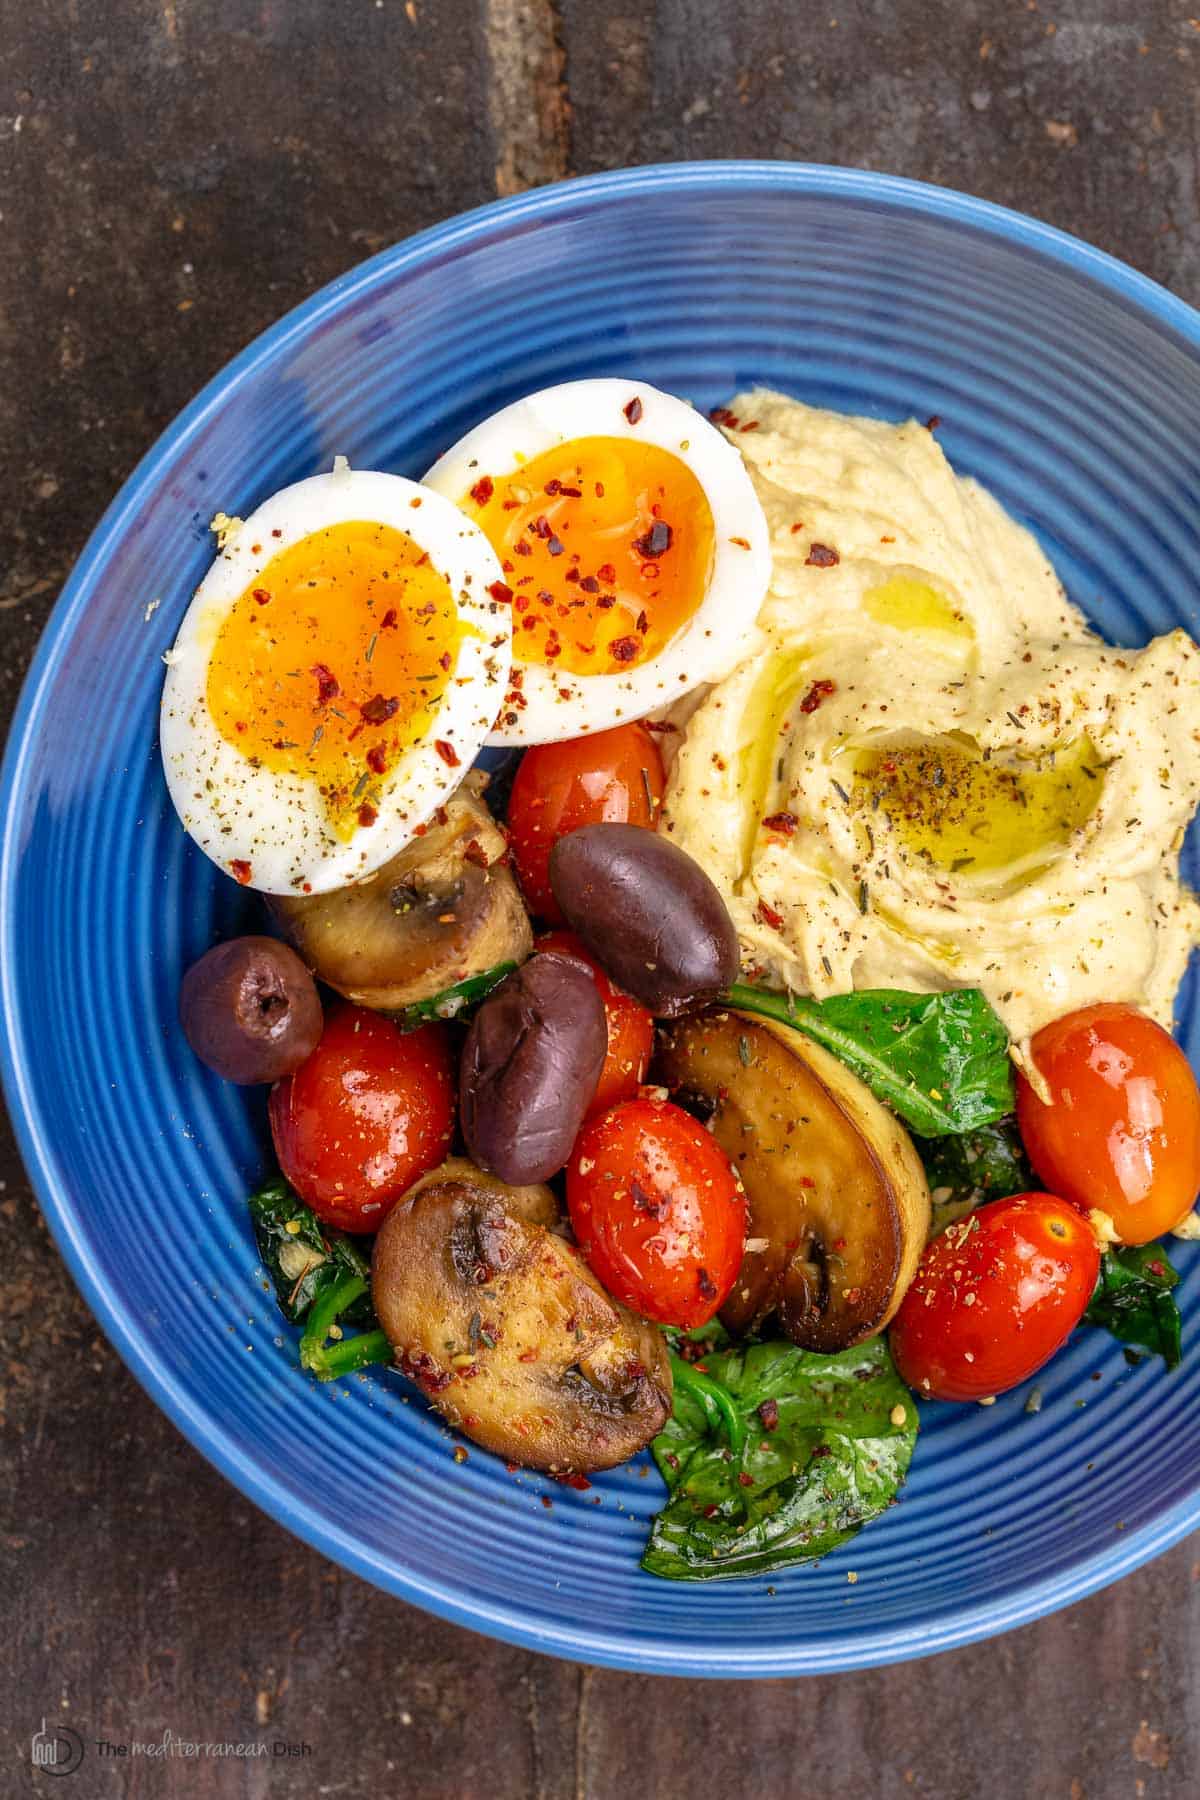 Mediterranean Diet Meal Plan Week 35 - The Domestic Dietitian